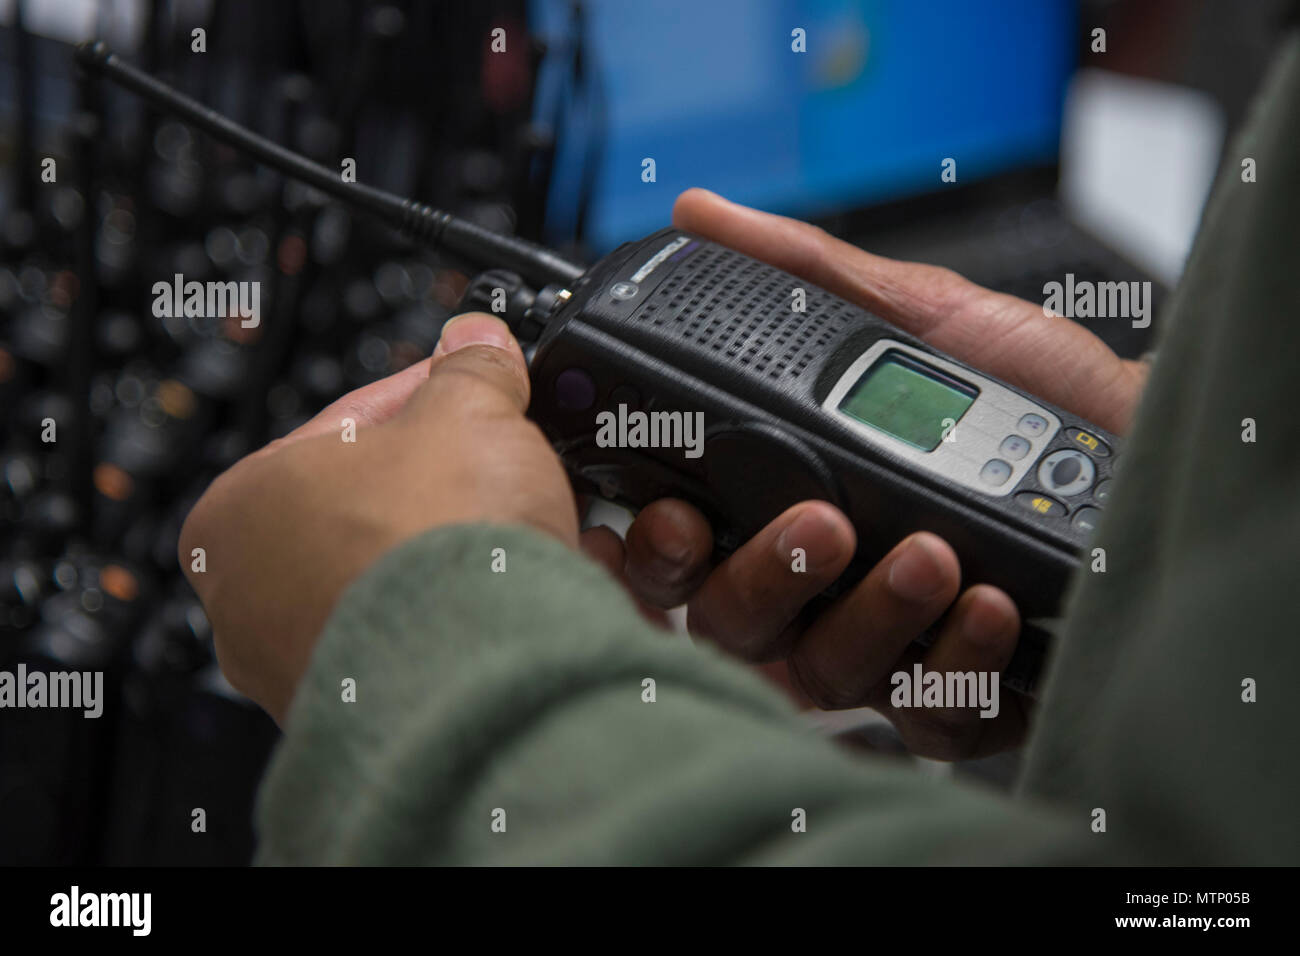 744Th Escadron des communications d'un système de transmission radio  fréquence inspecte un technicien radio mobile terrestre sur Joint Base  Andrews, dans le Maryland, le 11 janvier 2017. Environ 200 RLM ont été